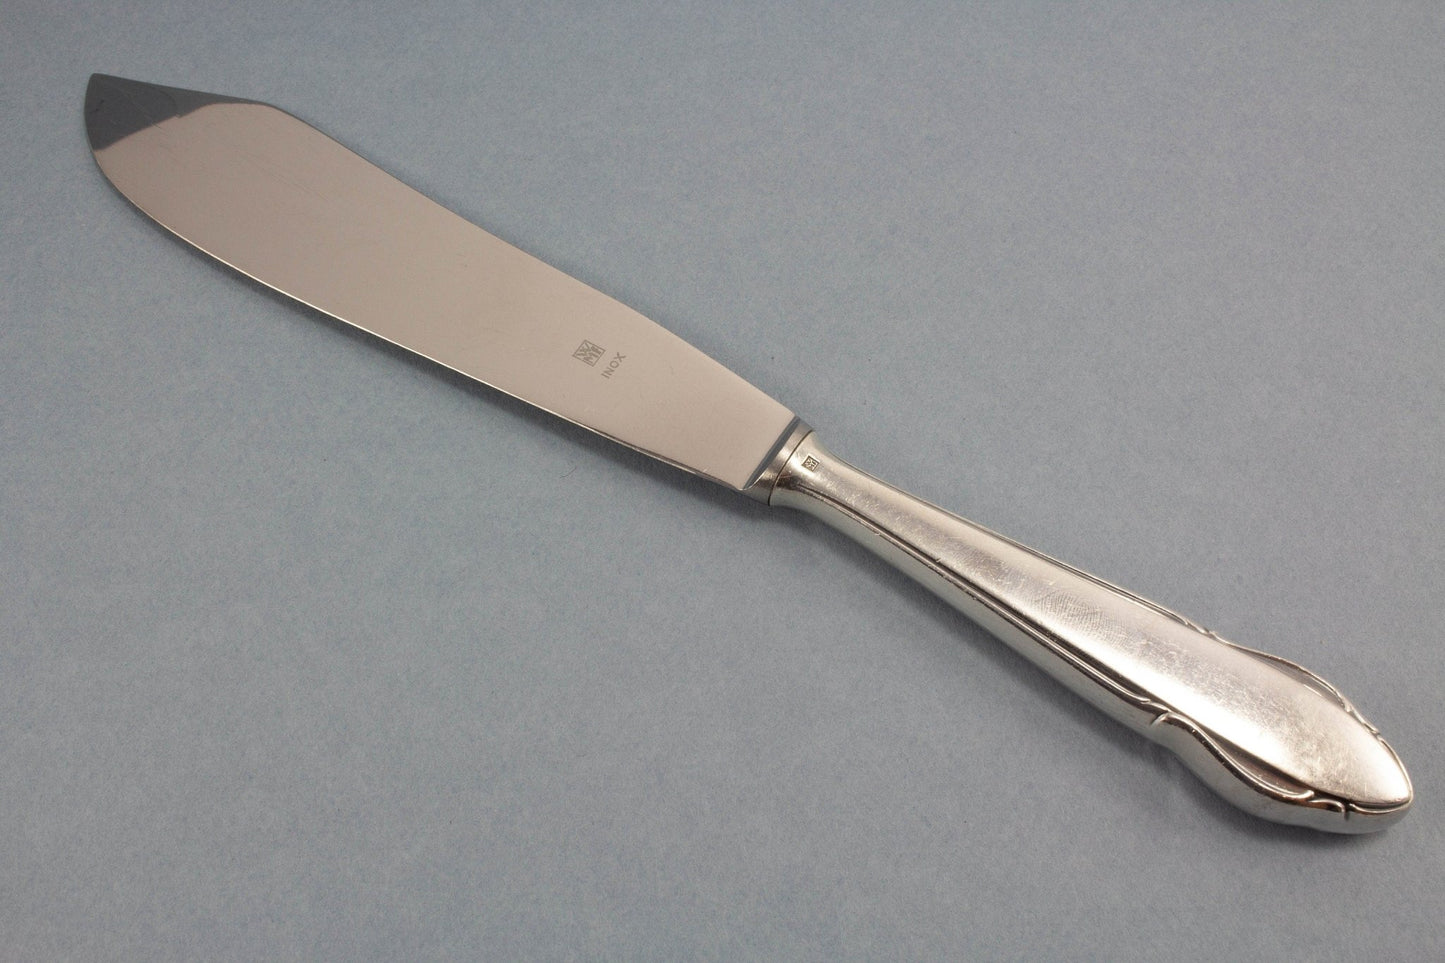 Versilbertes Tortenmesser von WMF, Vintage Messer für die Hochzeitstorte, WMF 2900 - Löffelland